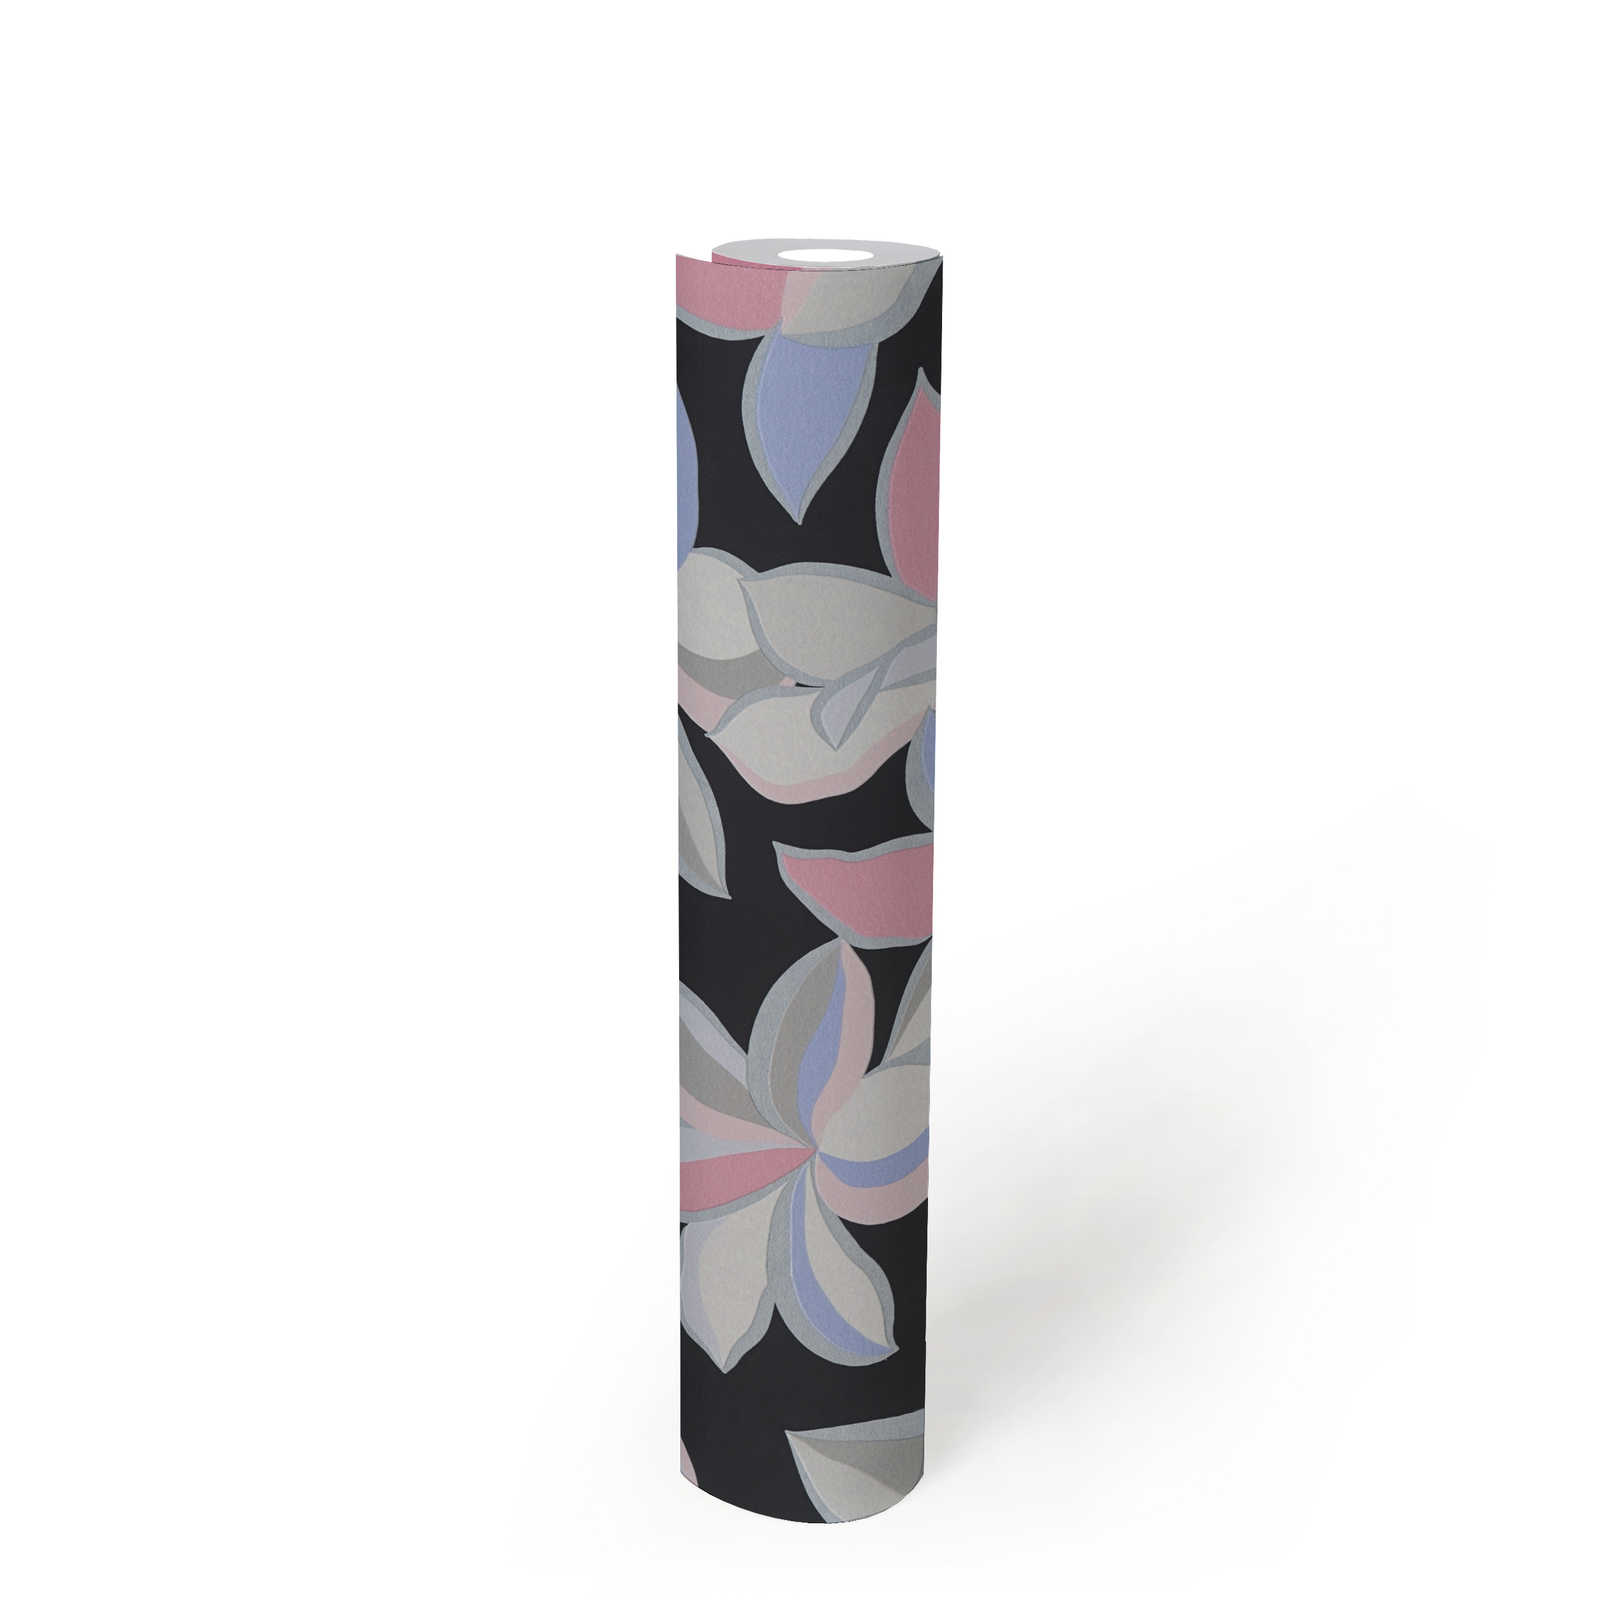             Bloemenpatroon met glanzend effect en fijne structuur - Zwart, Grijs, Roze
        